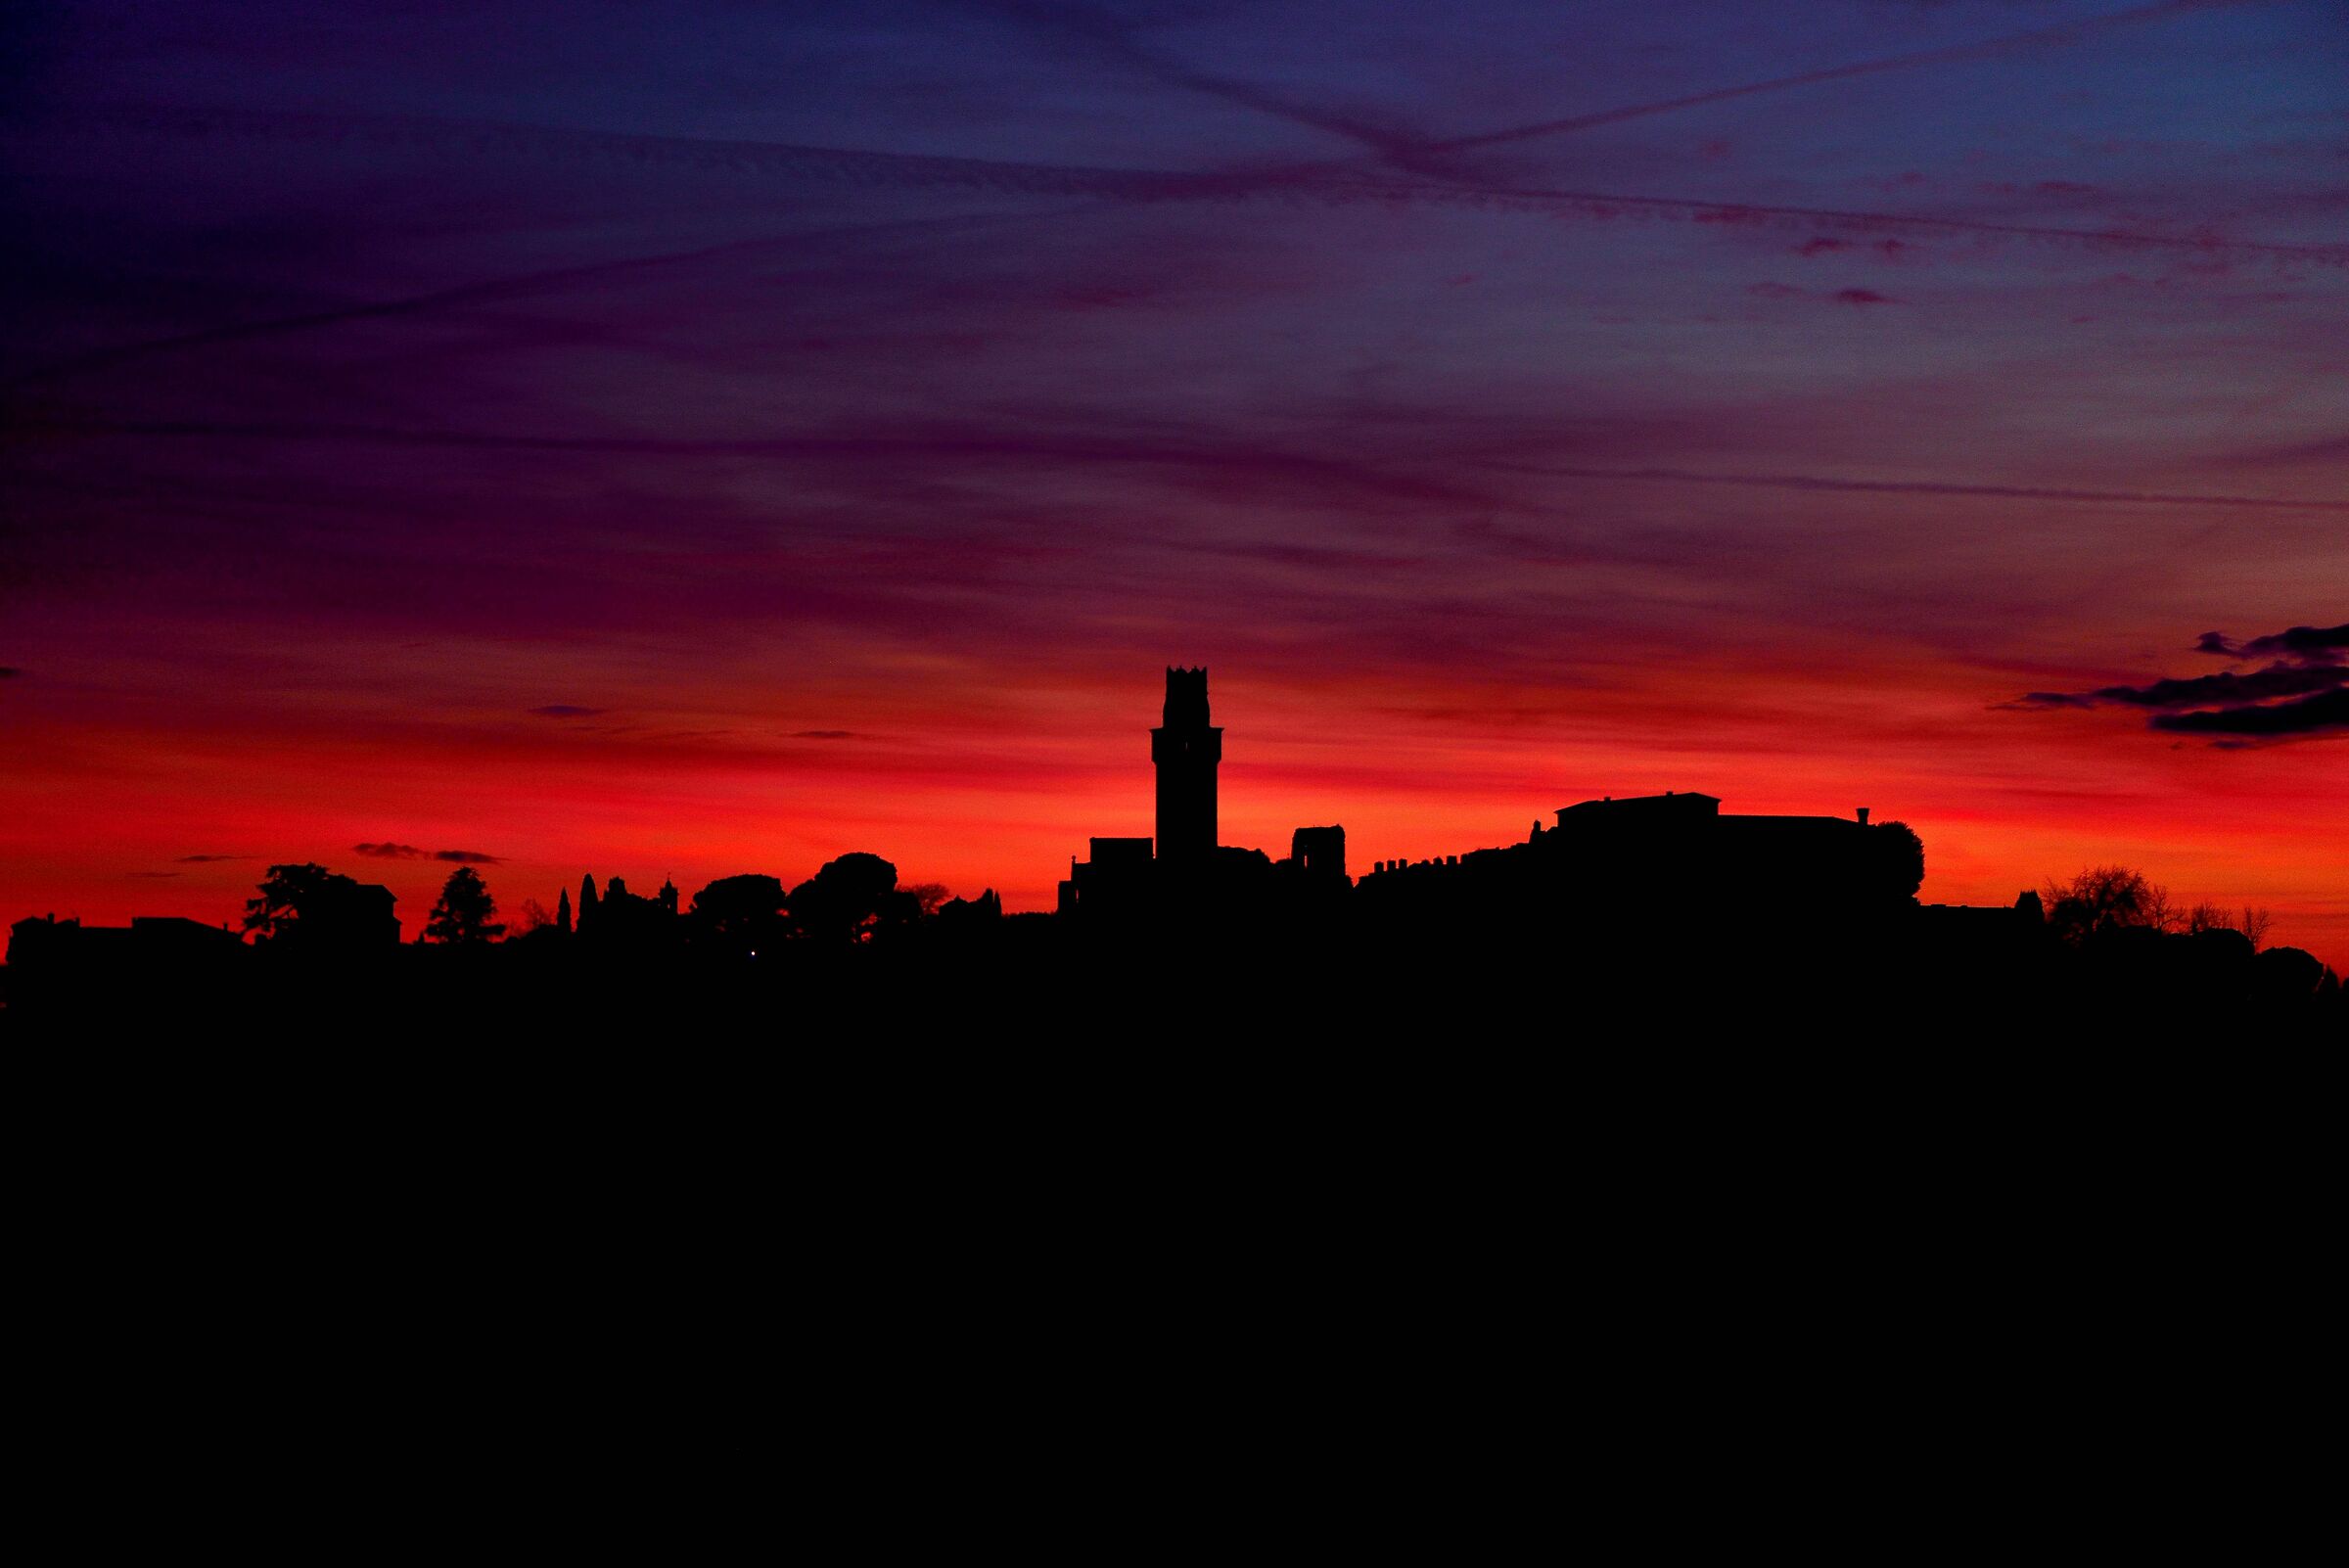 tramonto sul castello di San Salvatore - Collalto...